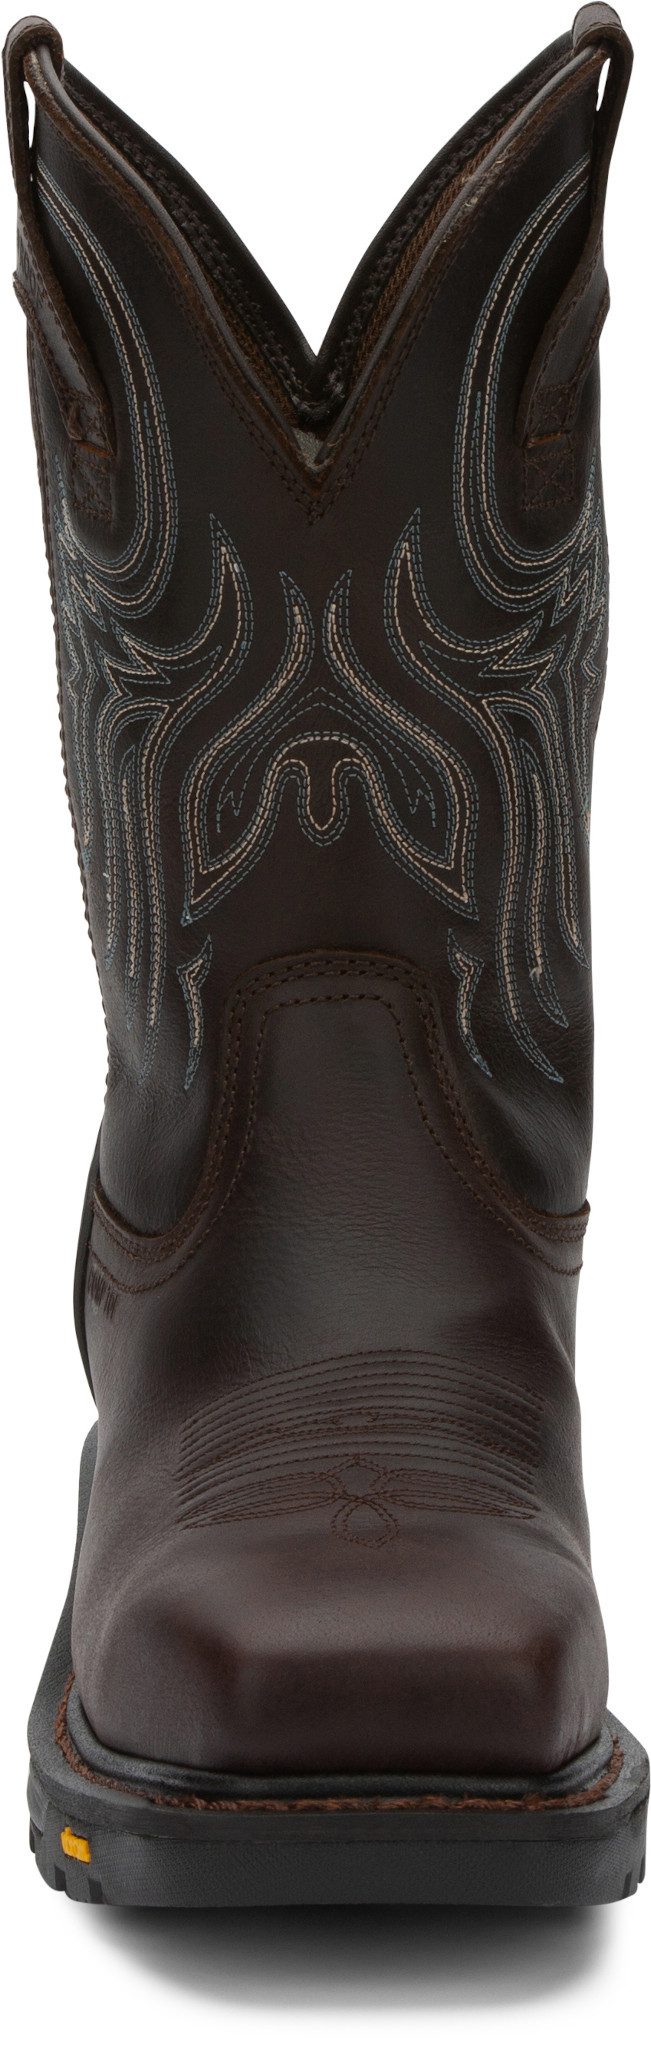 Vintage Ariat Ropers Mens Gris Marrón Cuero Cowboy Boots 10 B Western Two-Toned Grey Zapatos Zapatos para hombre Botas Botas de cowboy 